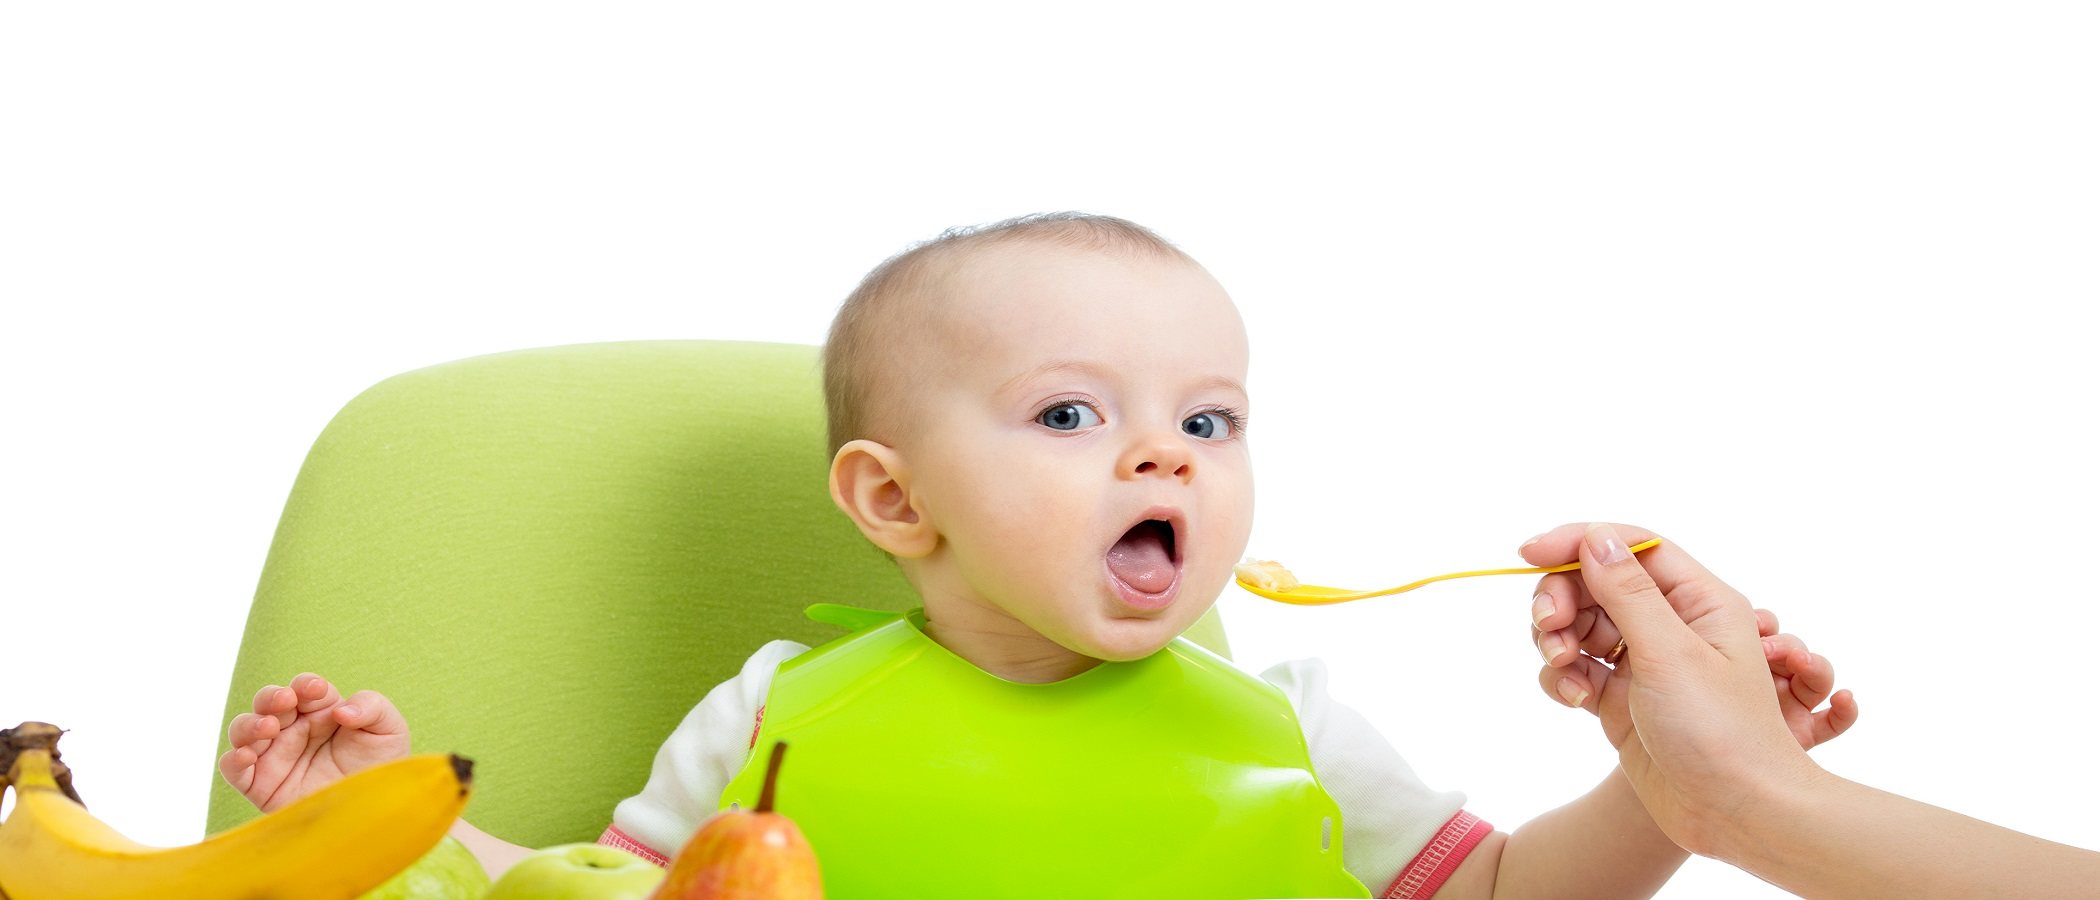 6 claves para una buena alimentación infantil